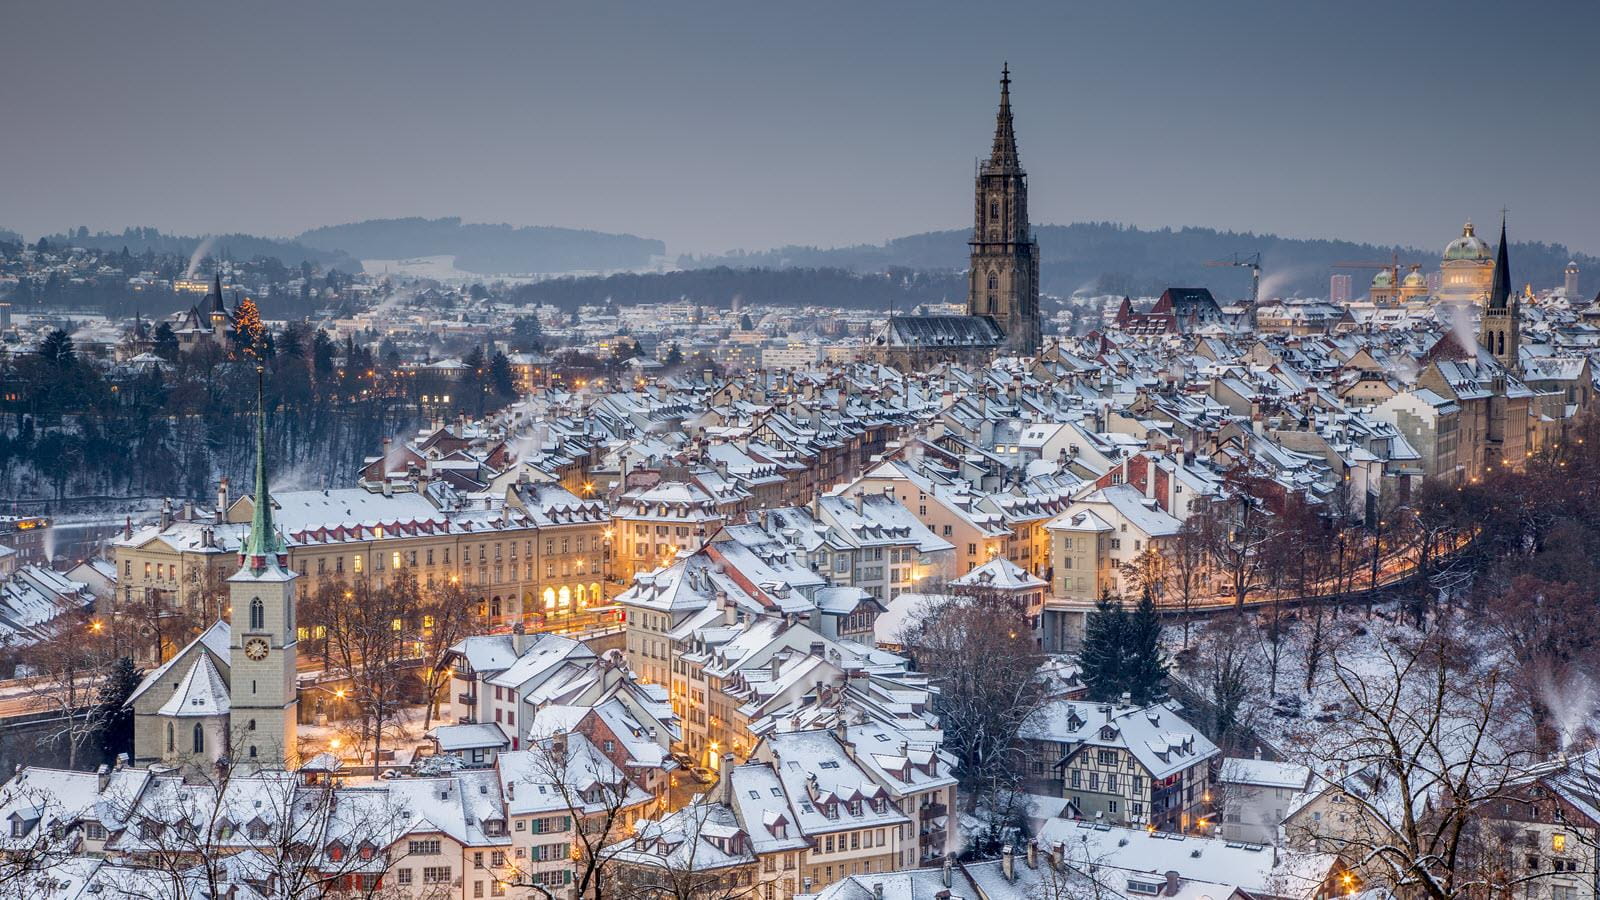 La capitale suisse de Berne, dépourvue de neige, avec la tour de sa cathédrale à l'horizon.